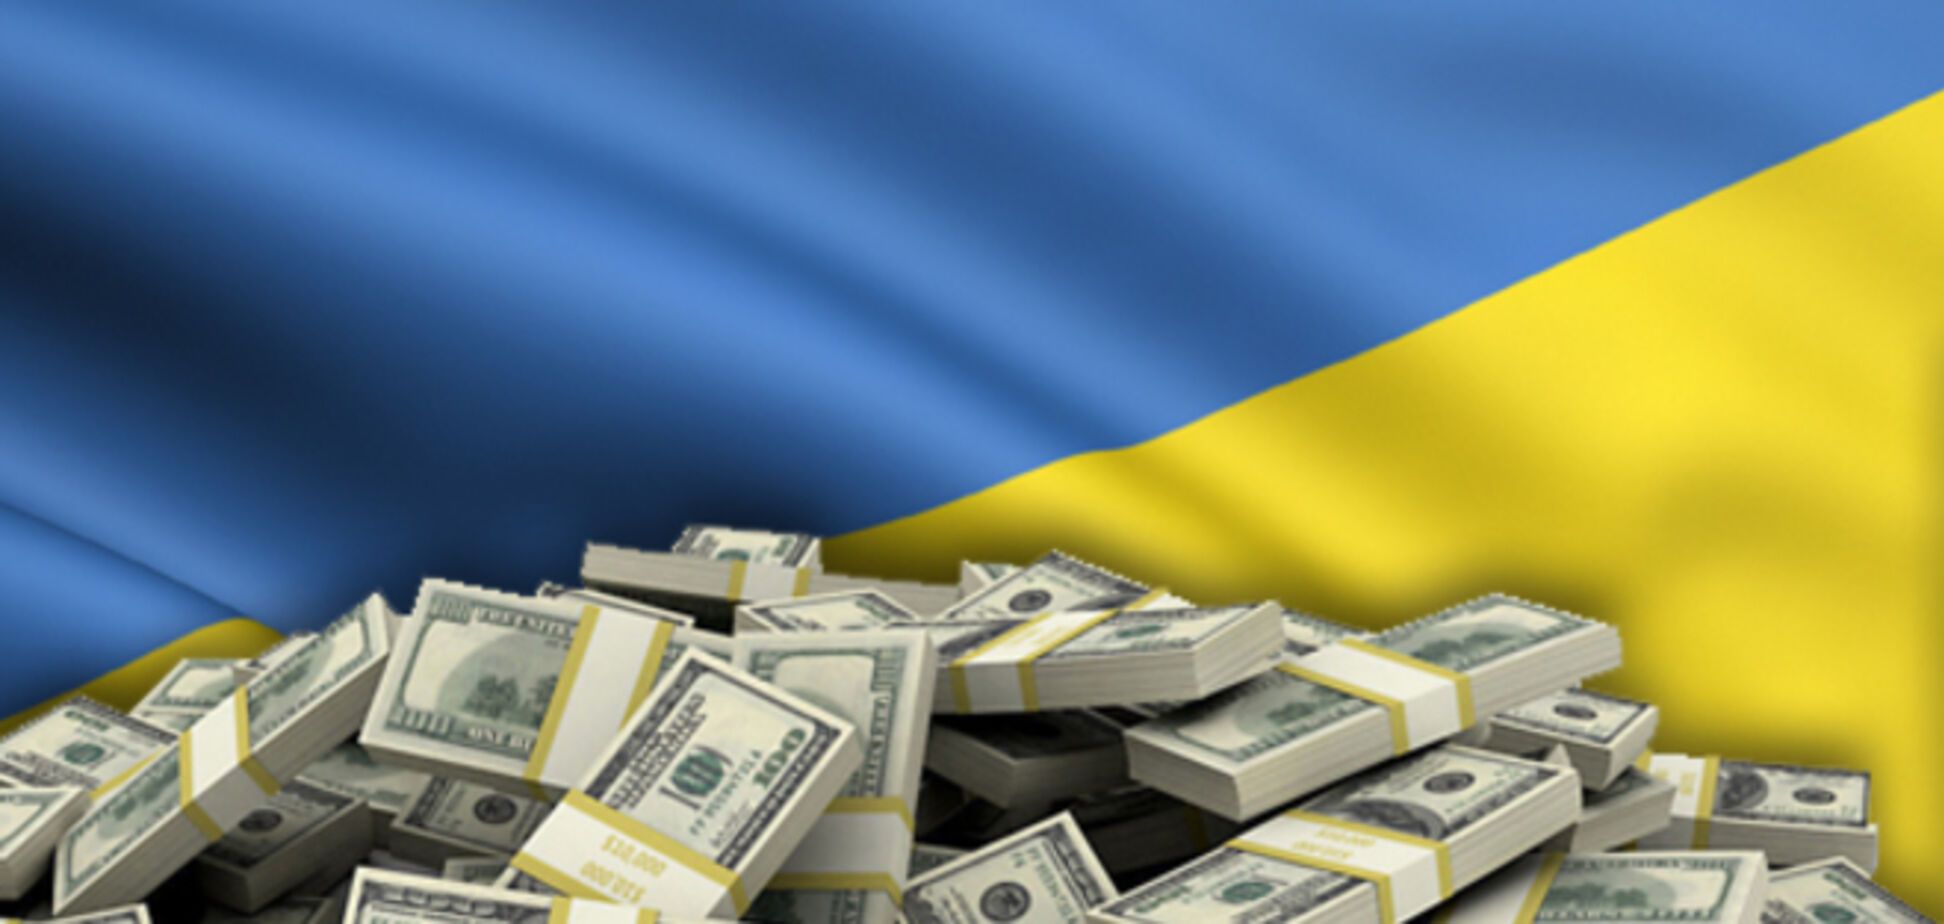 Деньги, полученные Украиной от МВФ, уйдут в Россию на финансирование войны – депутат Госдумы